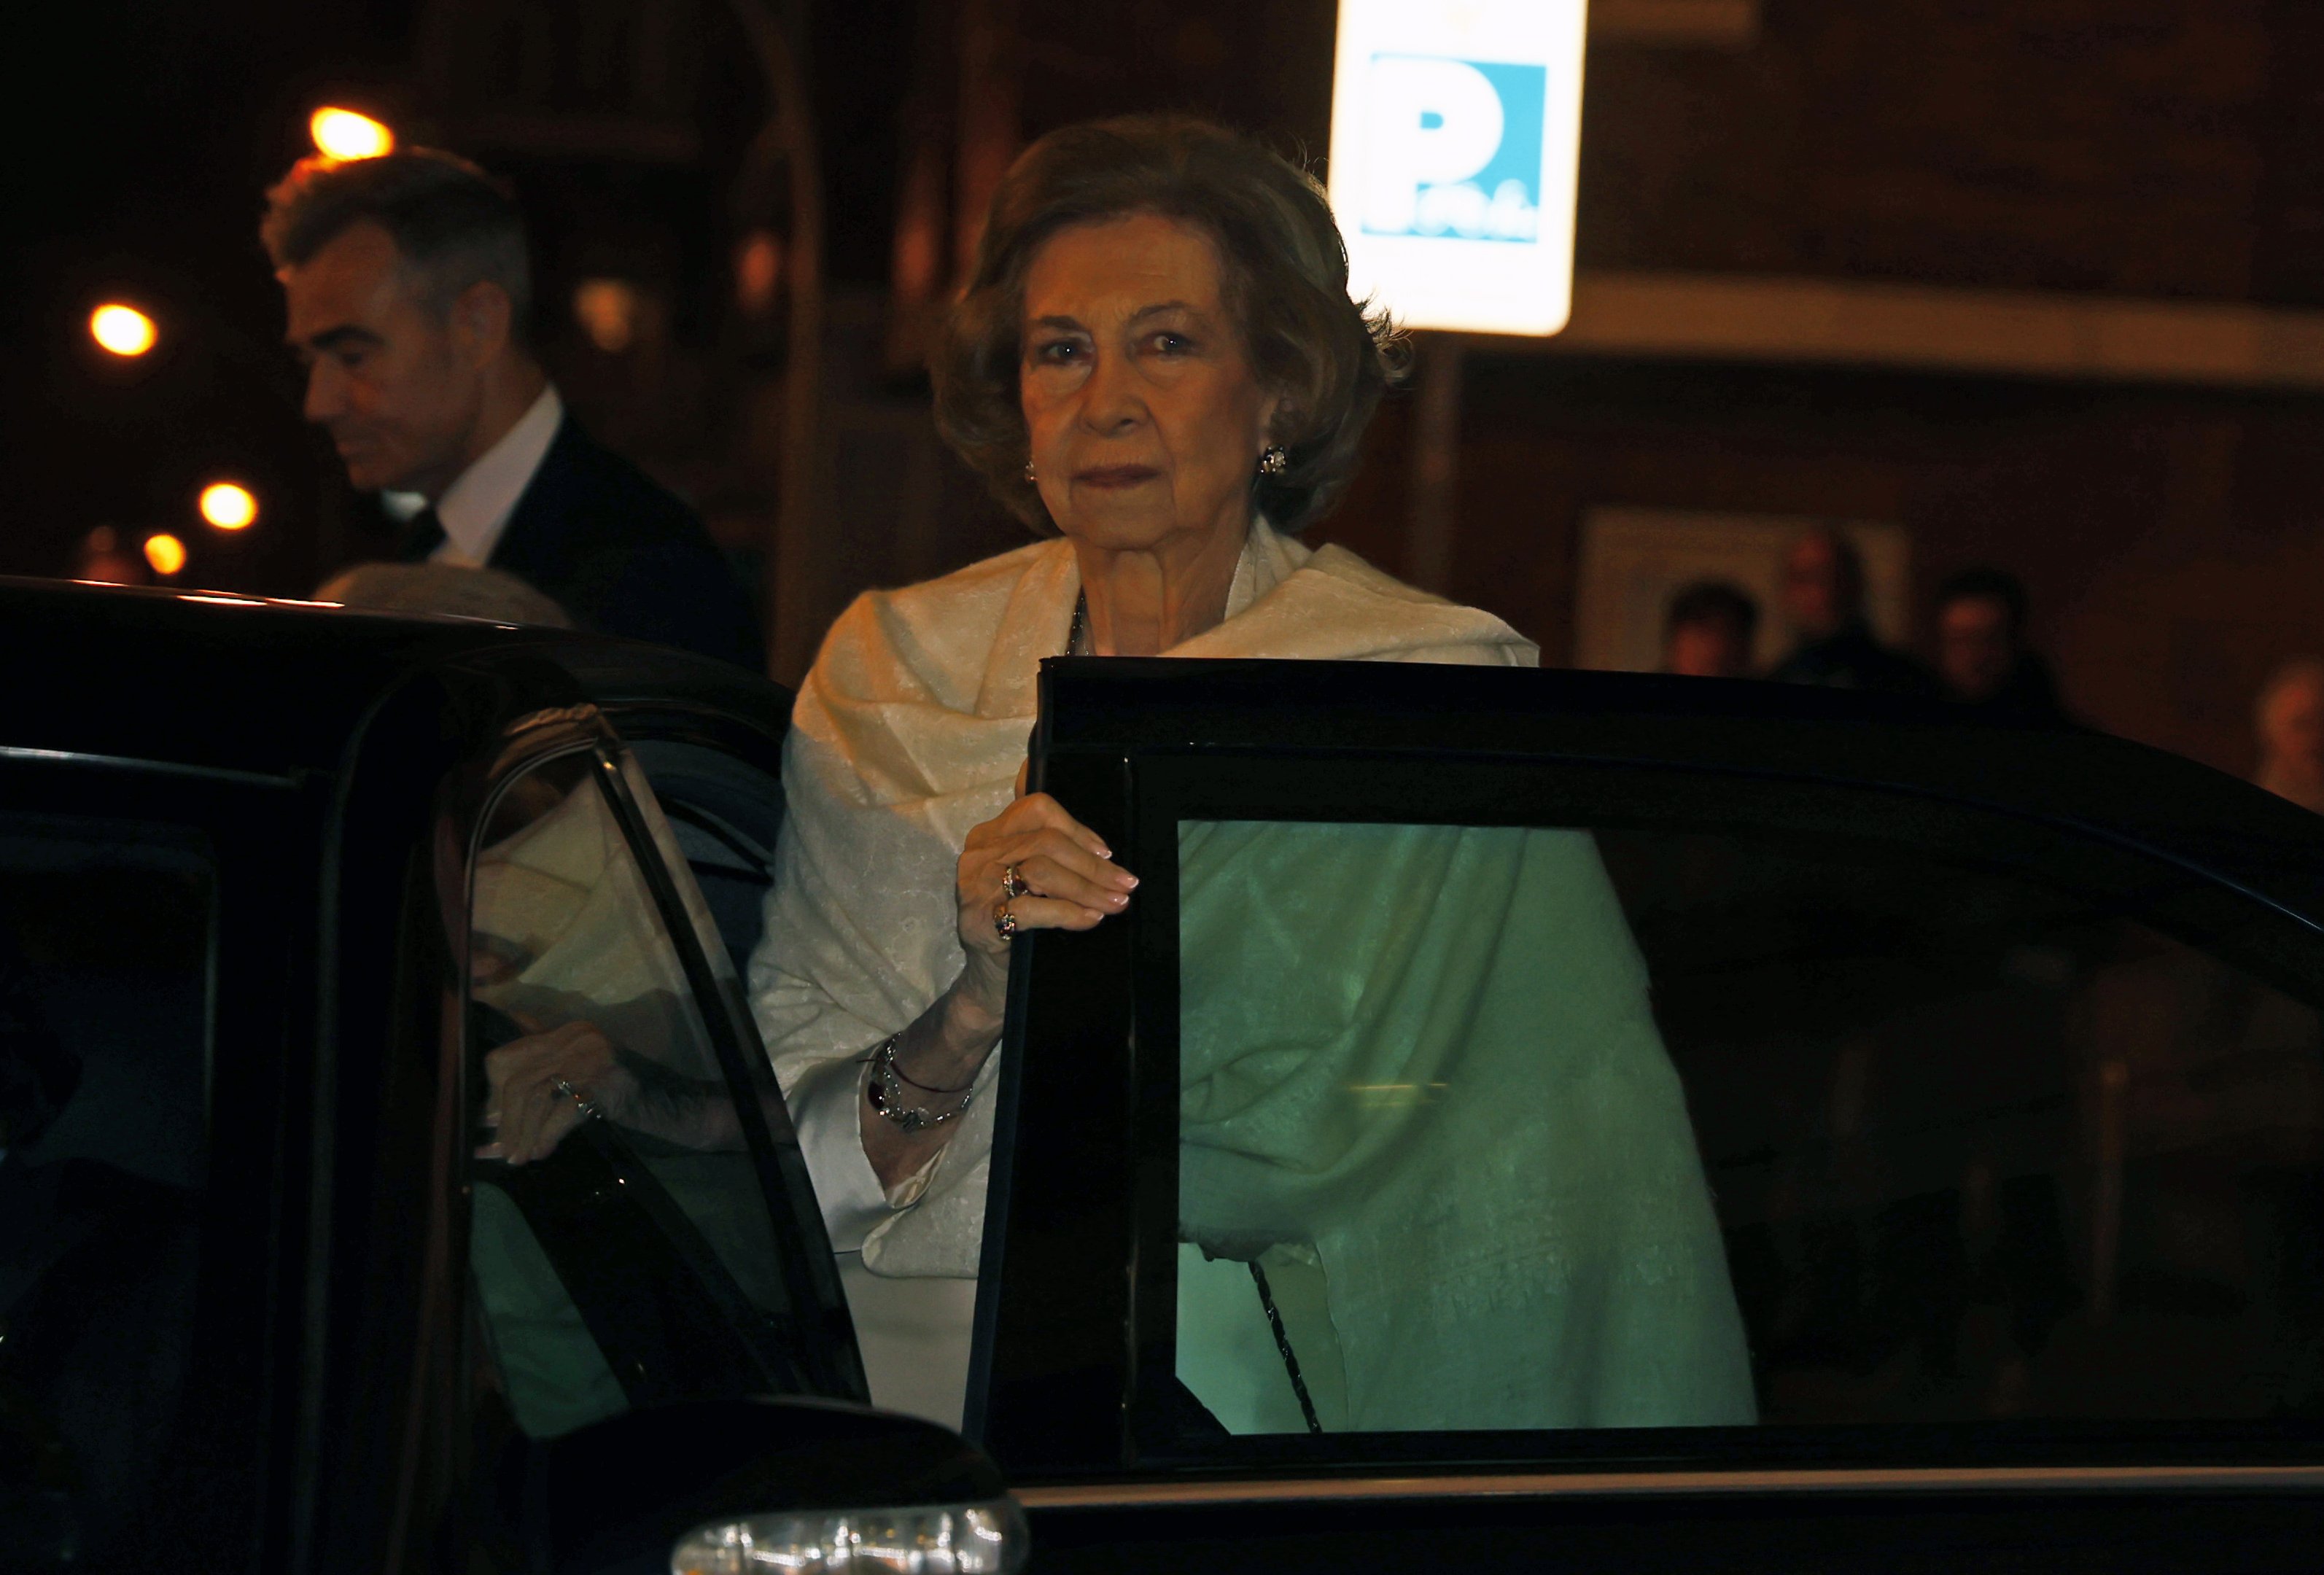 La reina Sofía frena la mudanza en Zarzuela después de 5 meses de presión